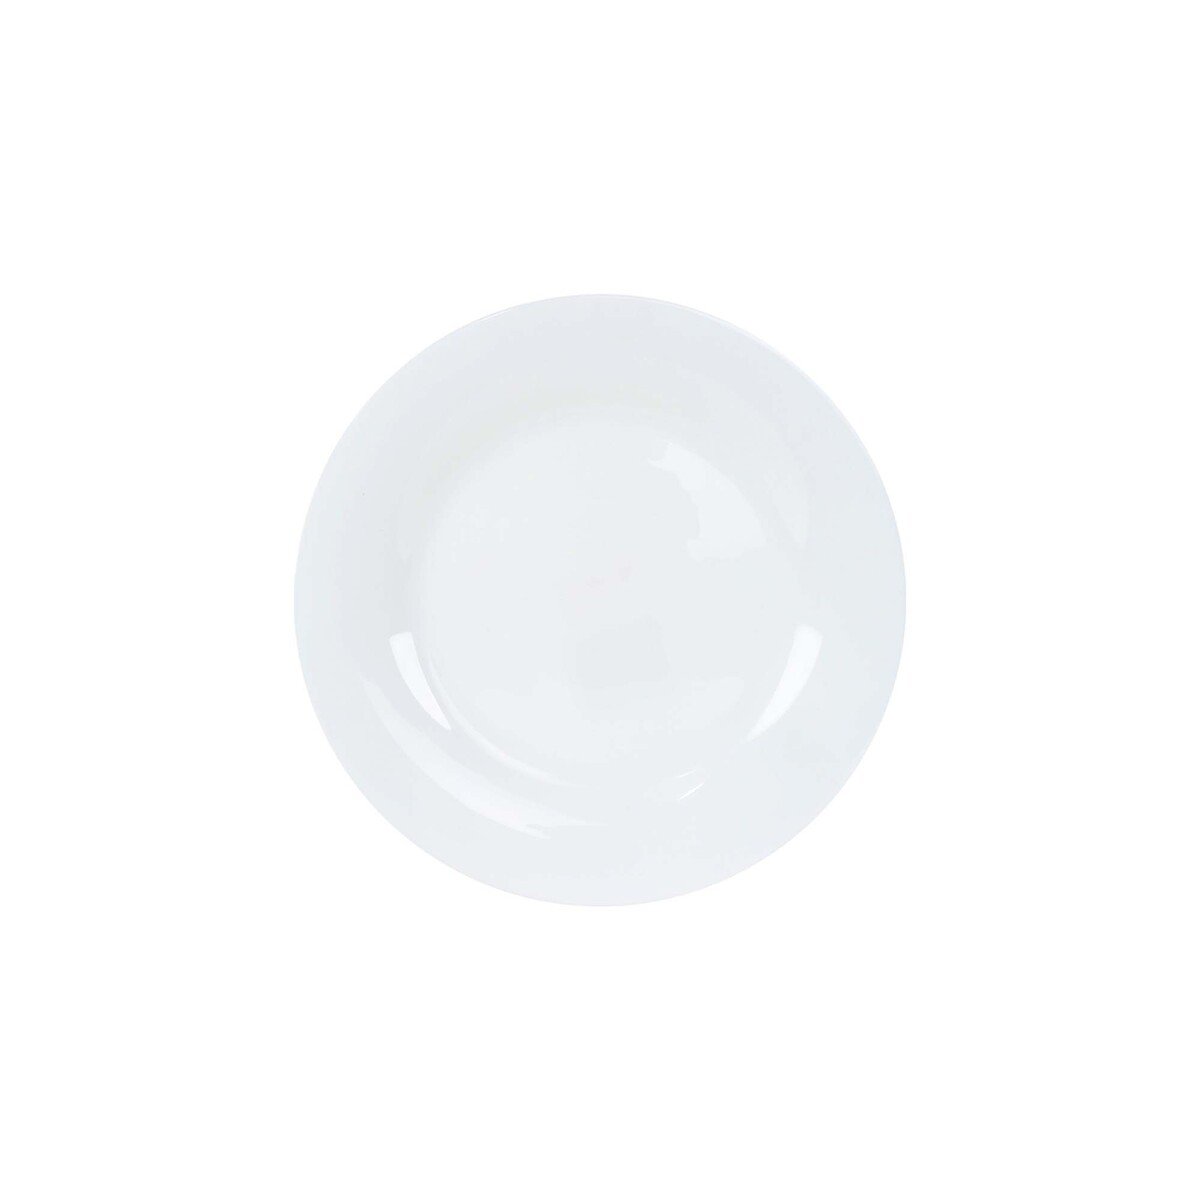 Chefline Dinner Plate 10in 1pc COR10WH White